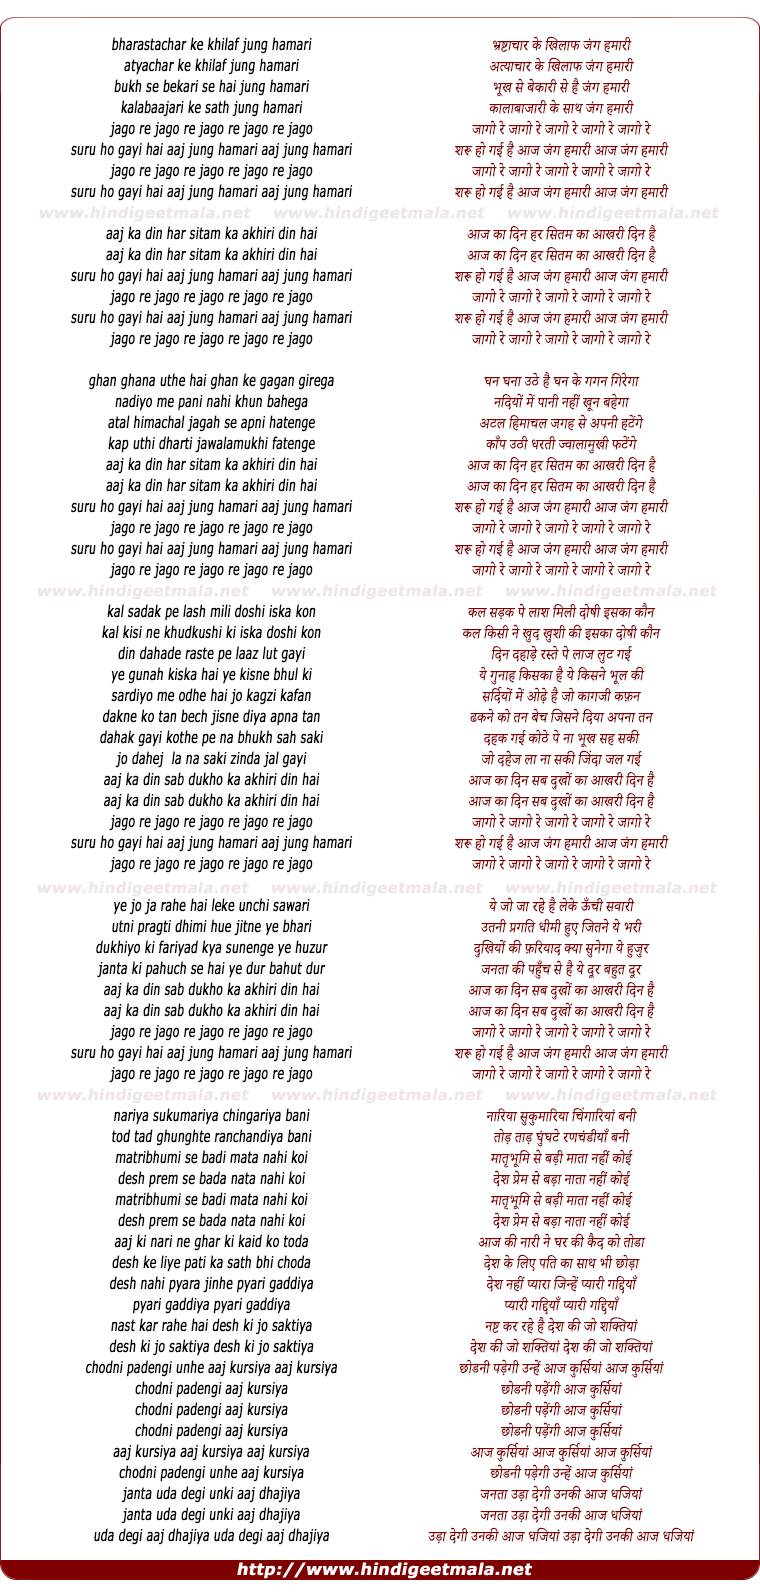 lyrics of song Jago Re Jago Suru Ho Gayi Hai Aj Jang Hamari